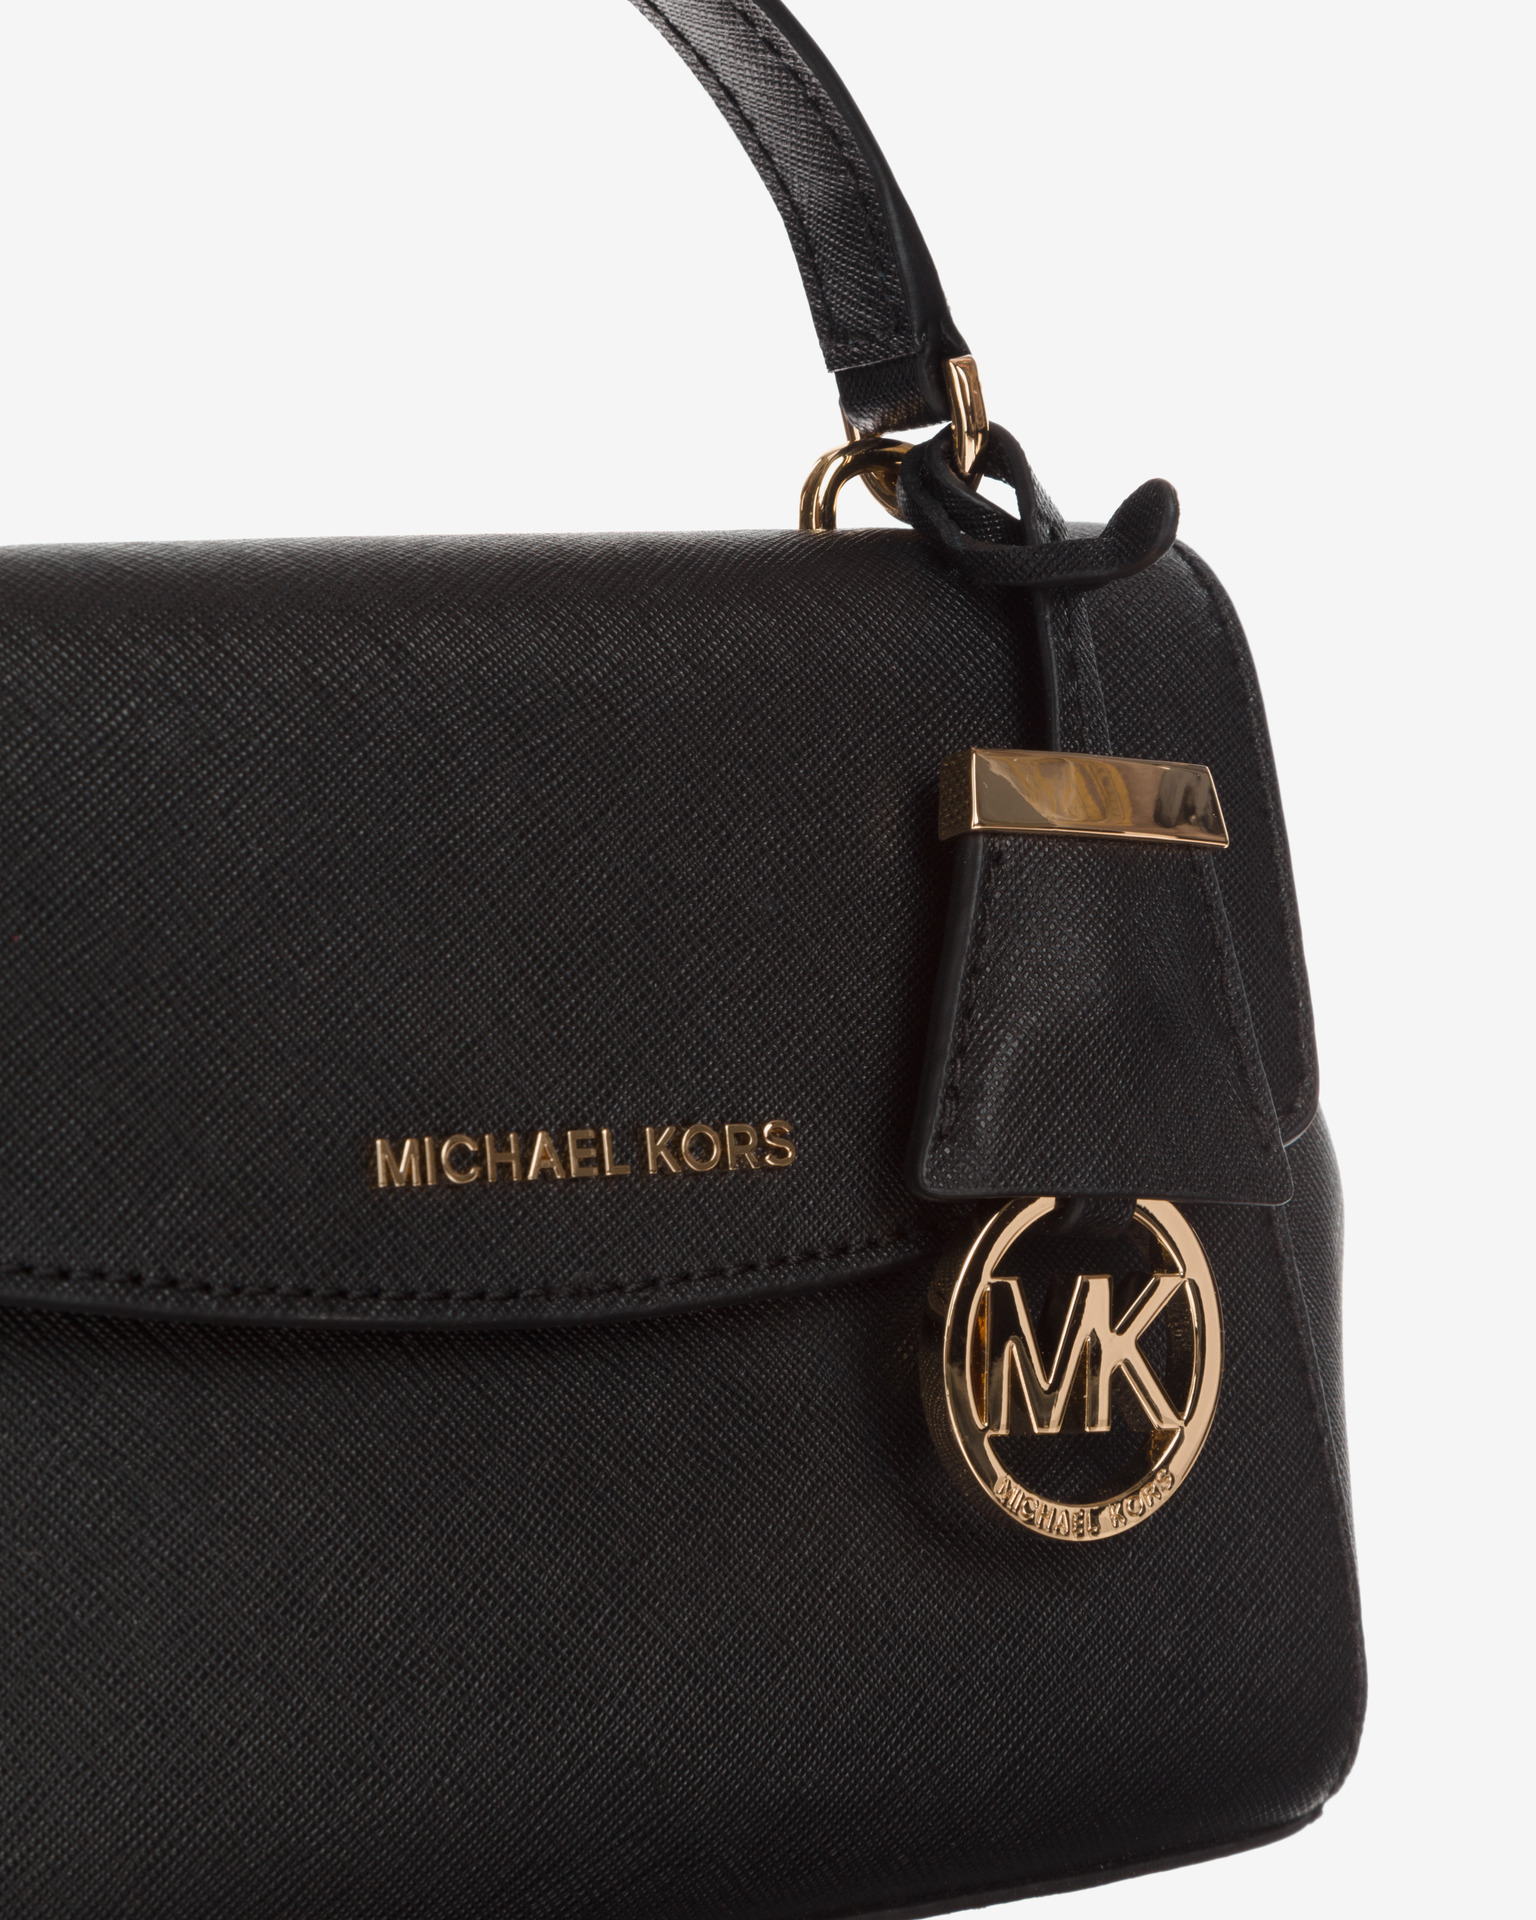 Michael Kors - Ava Cross body bag